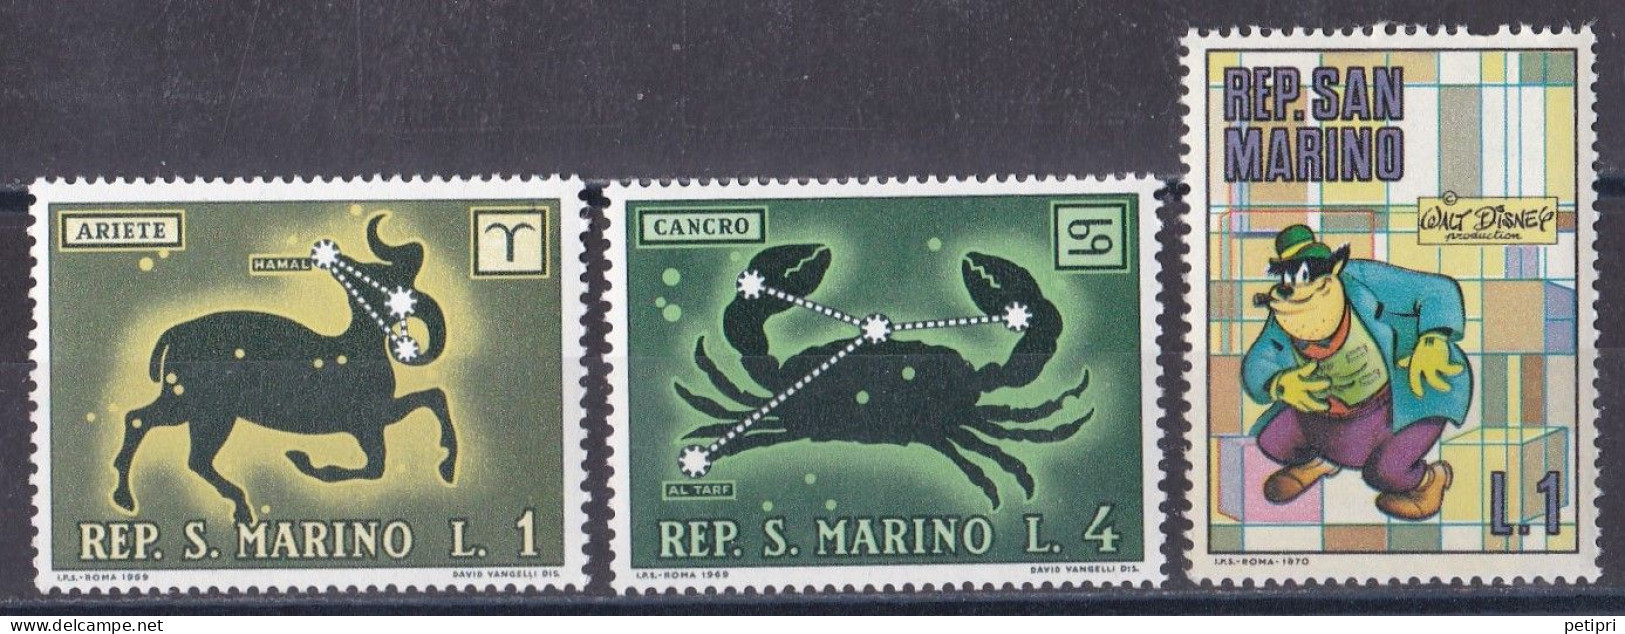 Saint Marin  1960 - 1969   Y&T  N °  749   752   769  NEUF ** - Neufs